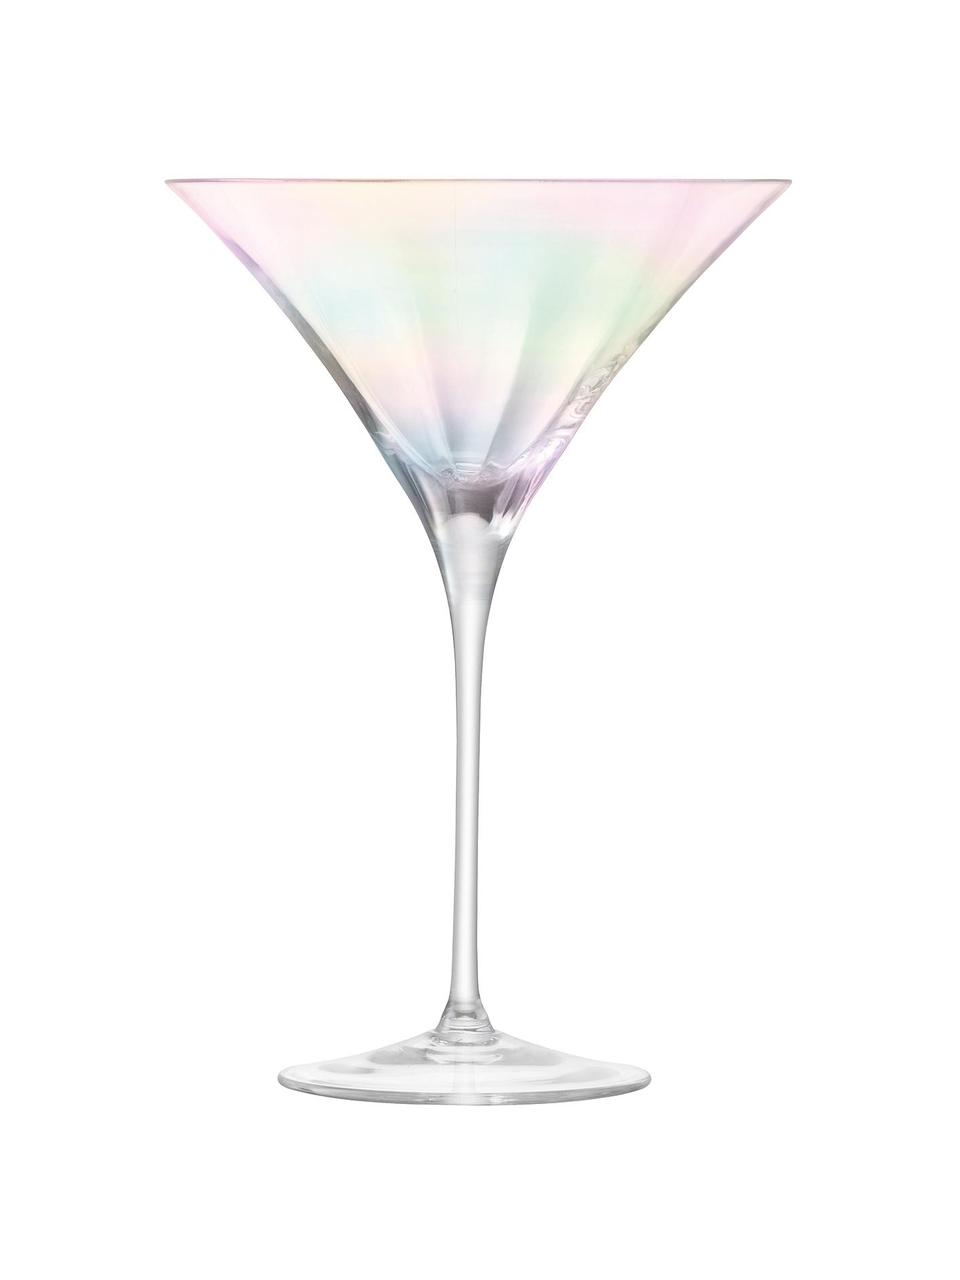 Mundgeblasene Martinigläser Pearl mit schimmerndem Perlmuttglanz, 2 Stück, Glas, Transparent, irisierend, Ø 14 x H 20 cm, 300 ml